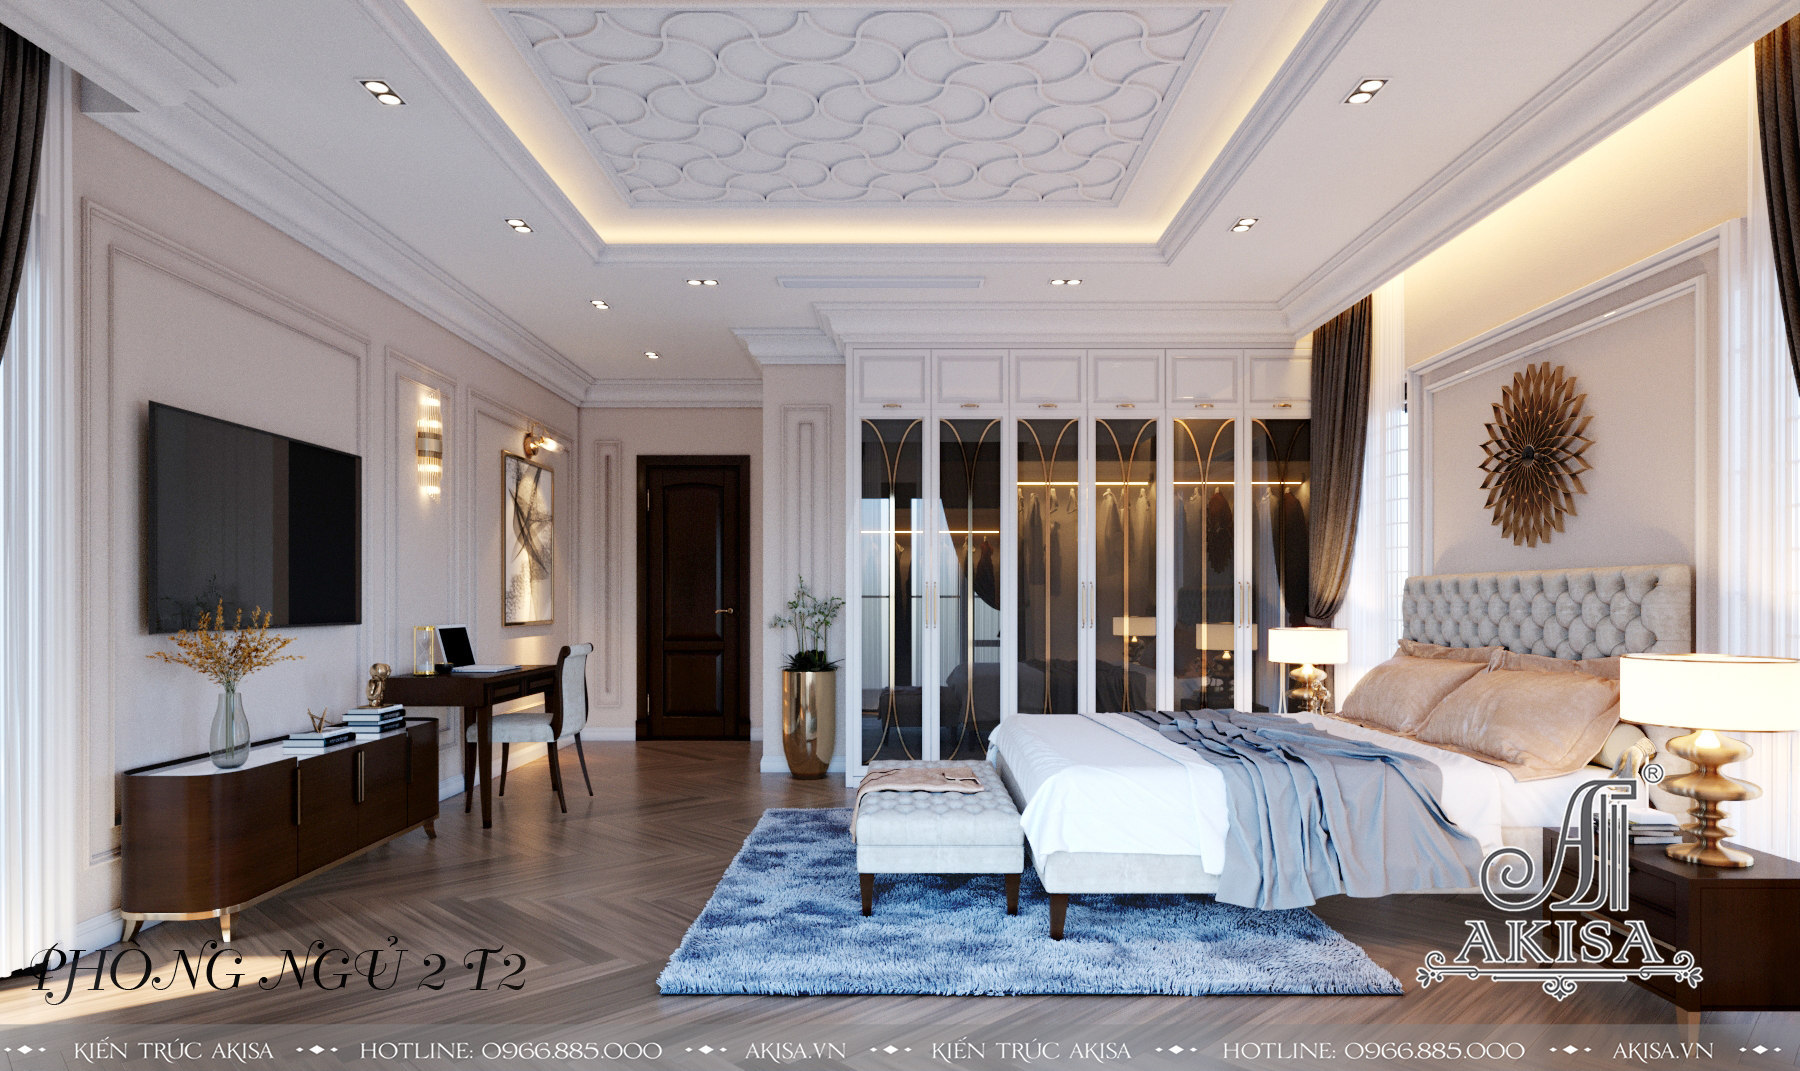 Phòng ngủ tầng 2 thiết kế trang nhã, đơn giản mang lại vẻ đẹp thanh lịch, nhã nhặn 